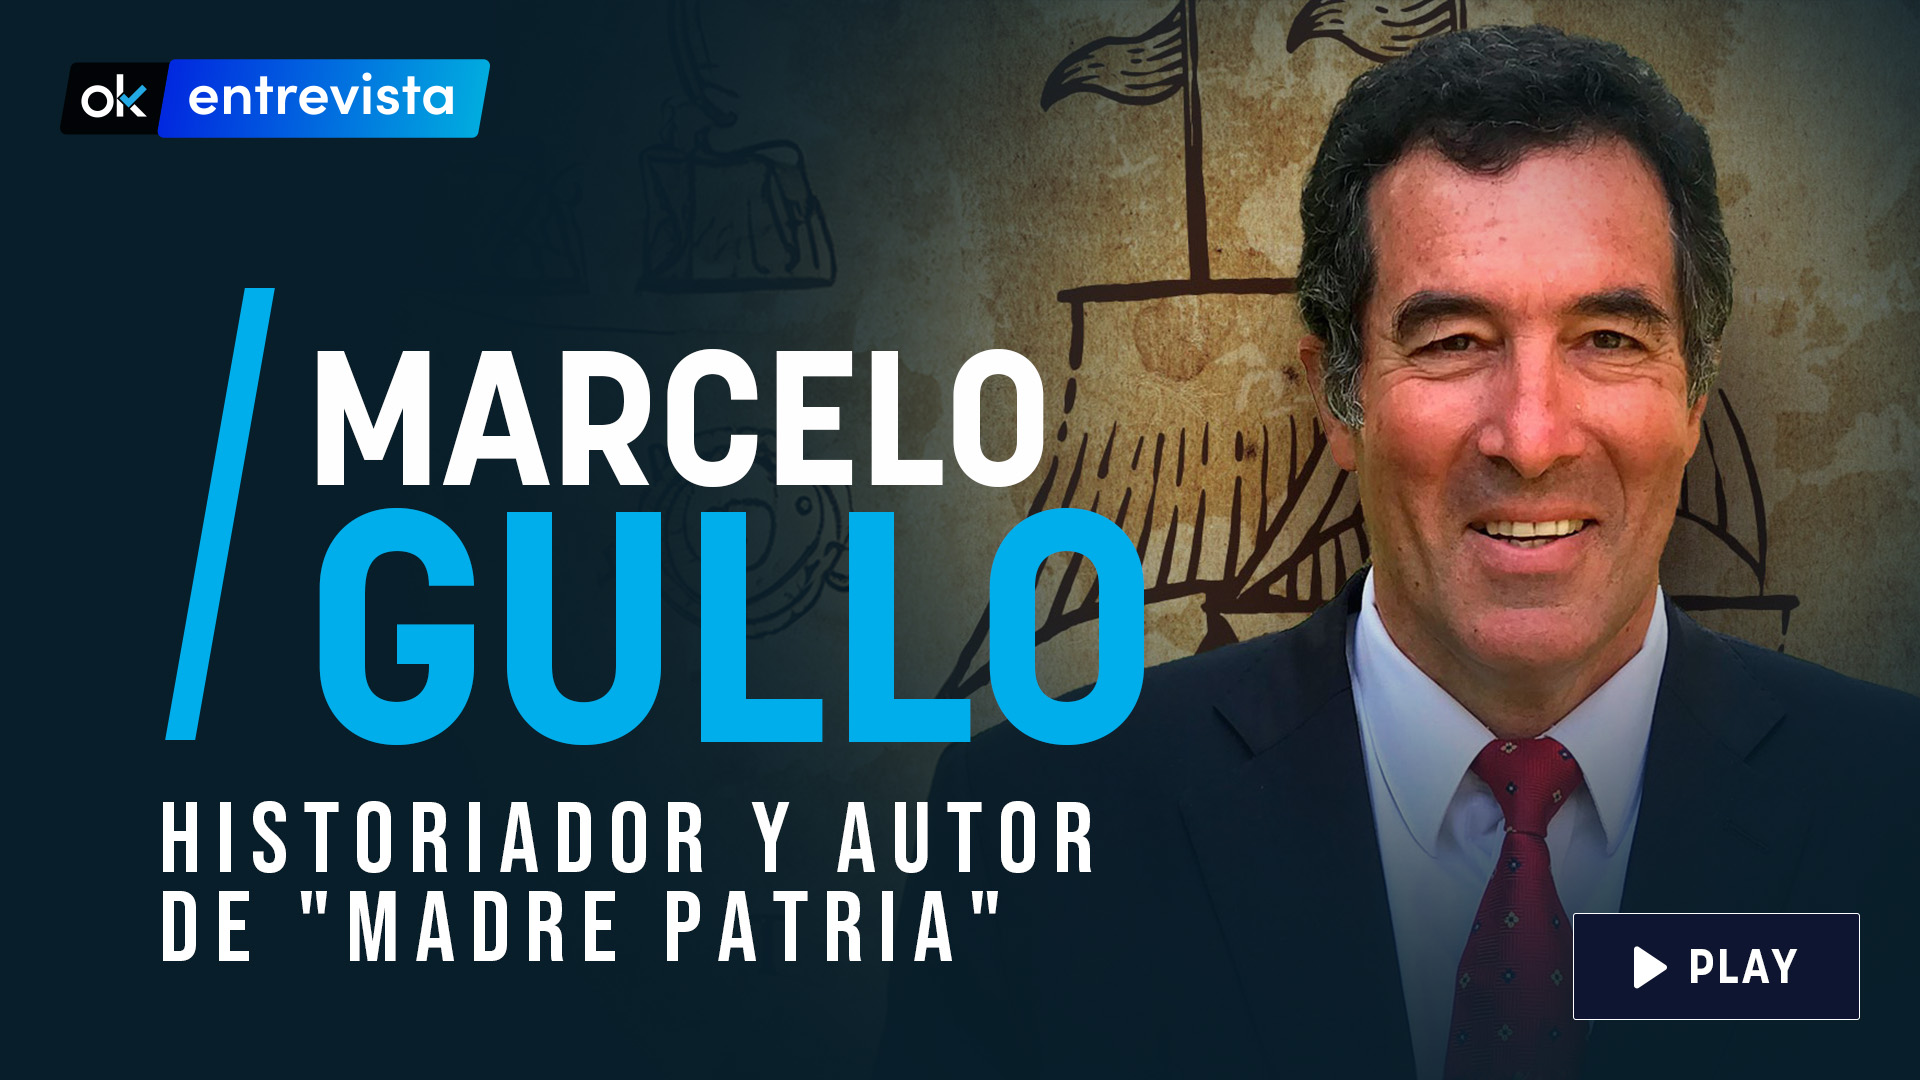 El historiador Marcelo Gullo